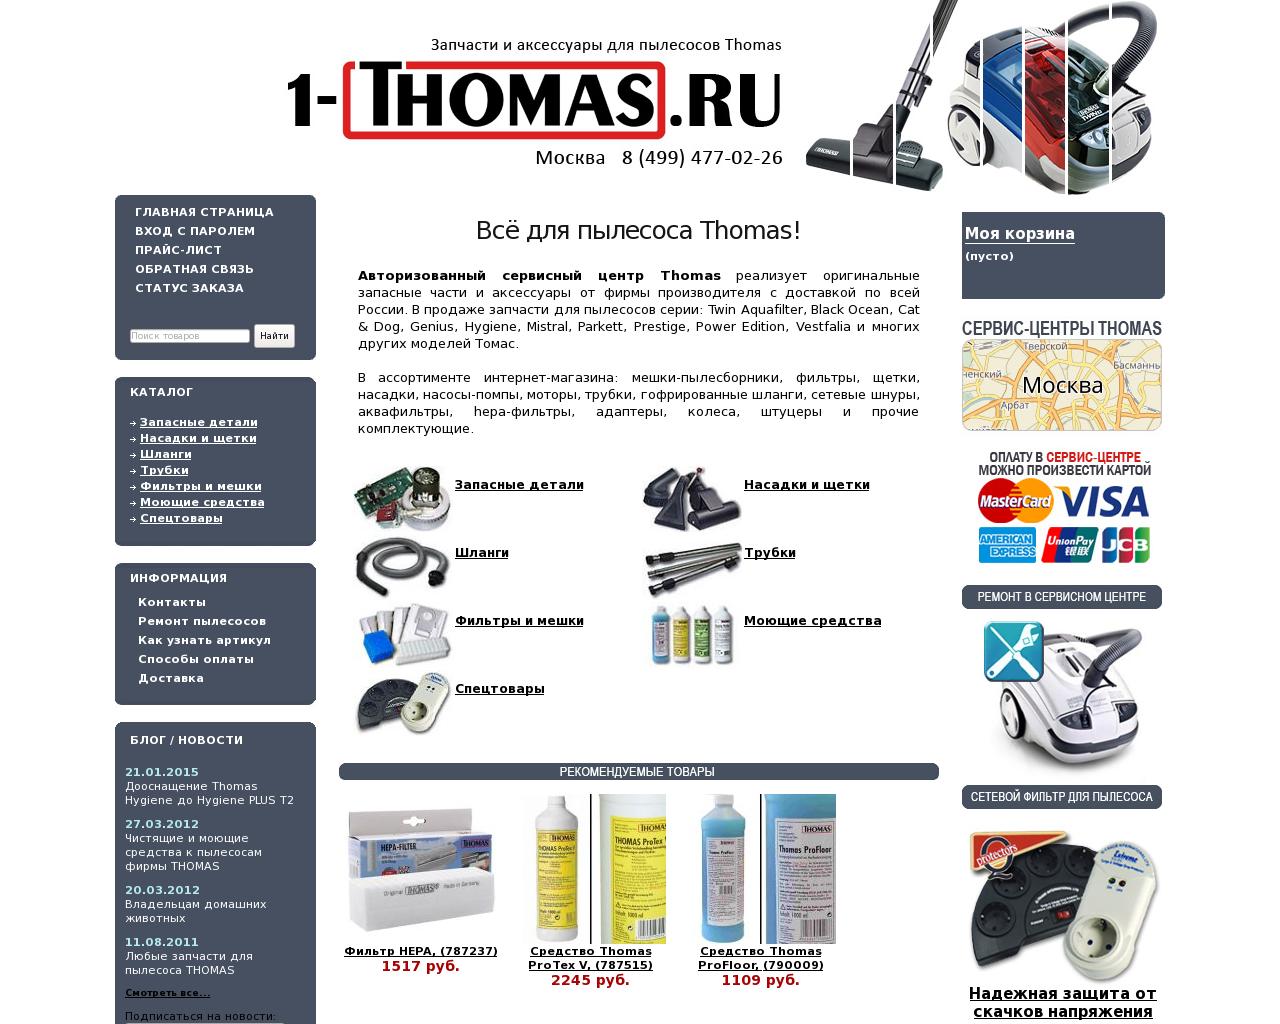 Изображение сайта 1-thomas.ru в разрешении 1280x1024